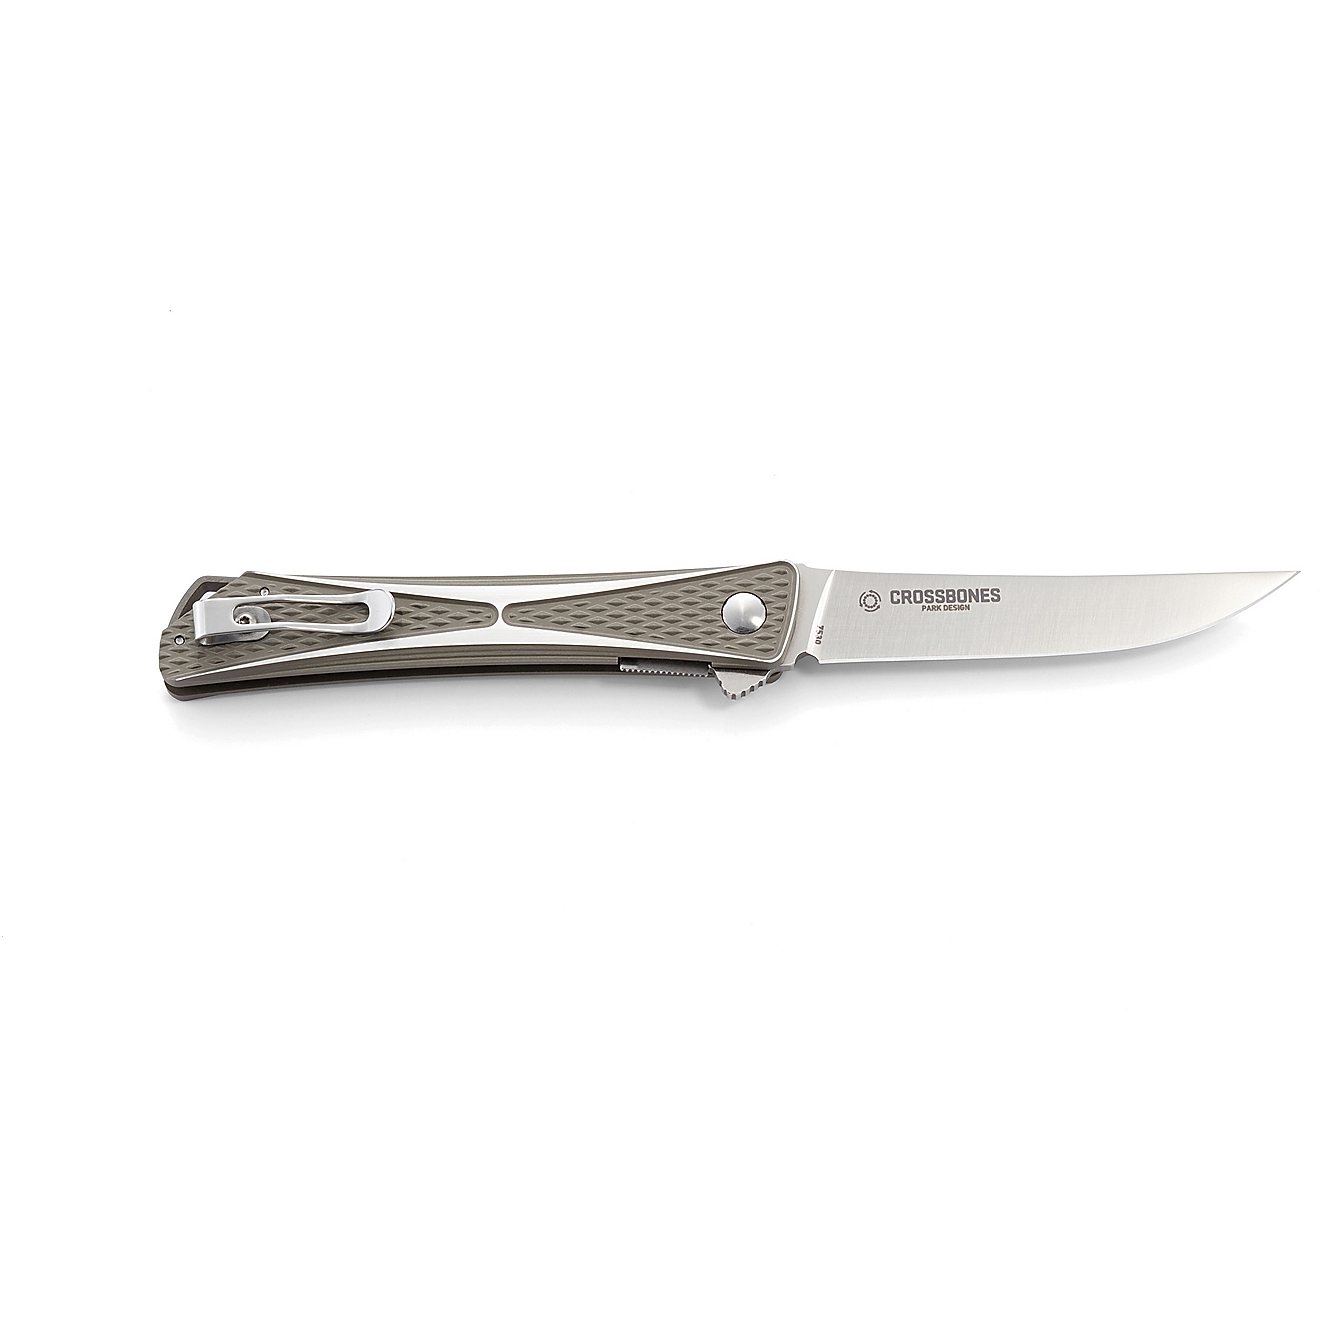 CRKT 7530 Crossbones Folding Pocket Knife                                                                                        - view number 2